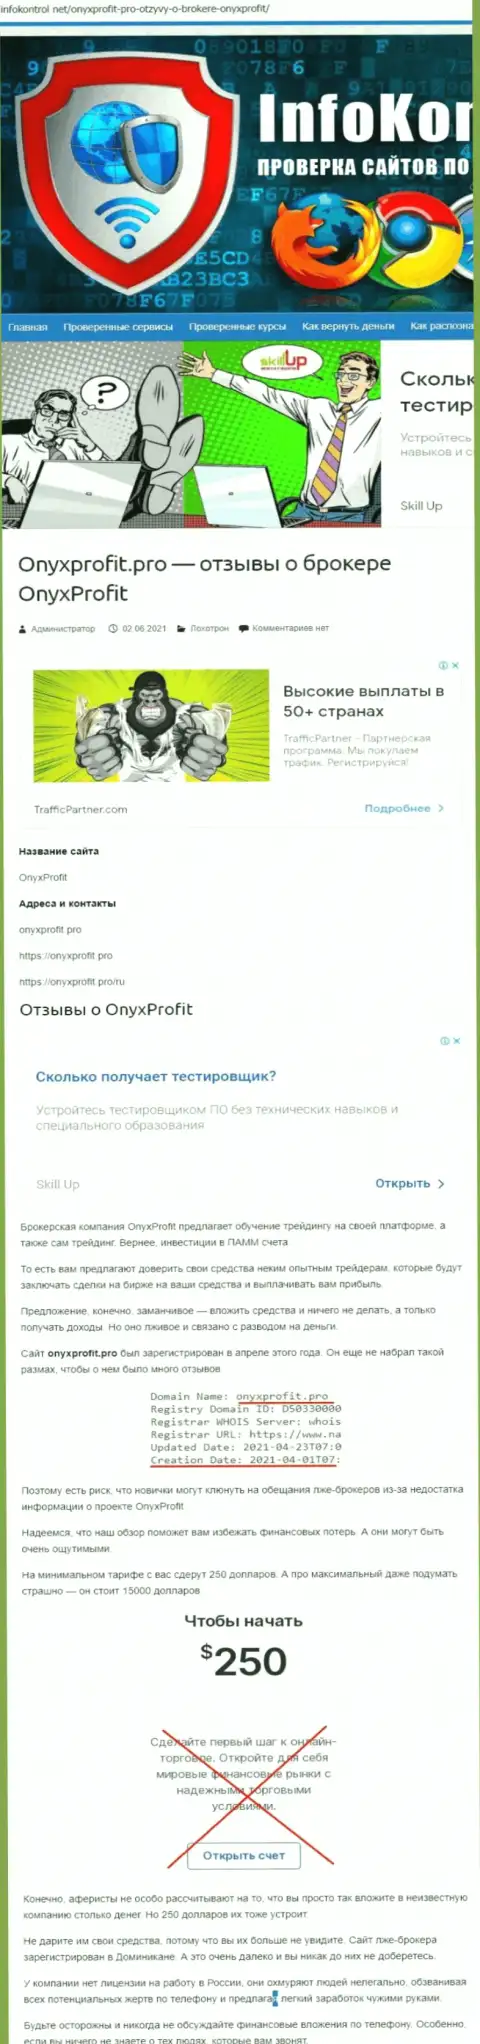 Onyx Profit - это очередной лохотрон, на который вестись не рекомендуем (обзор мошенничества организации)